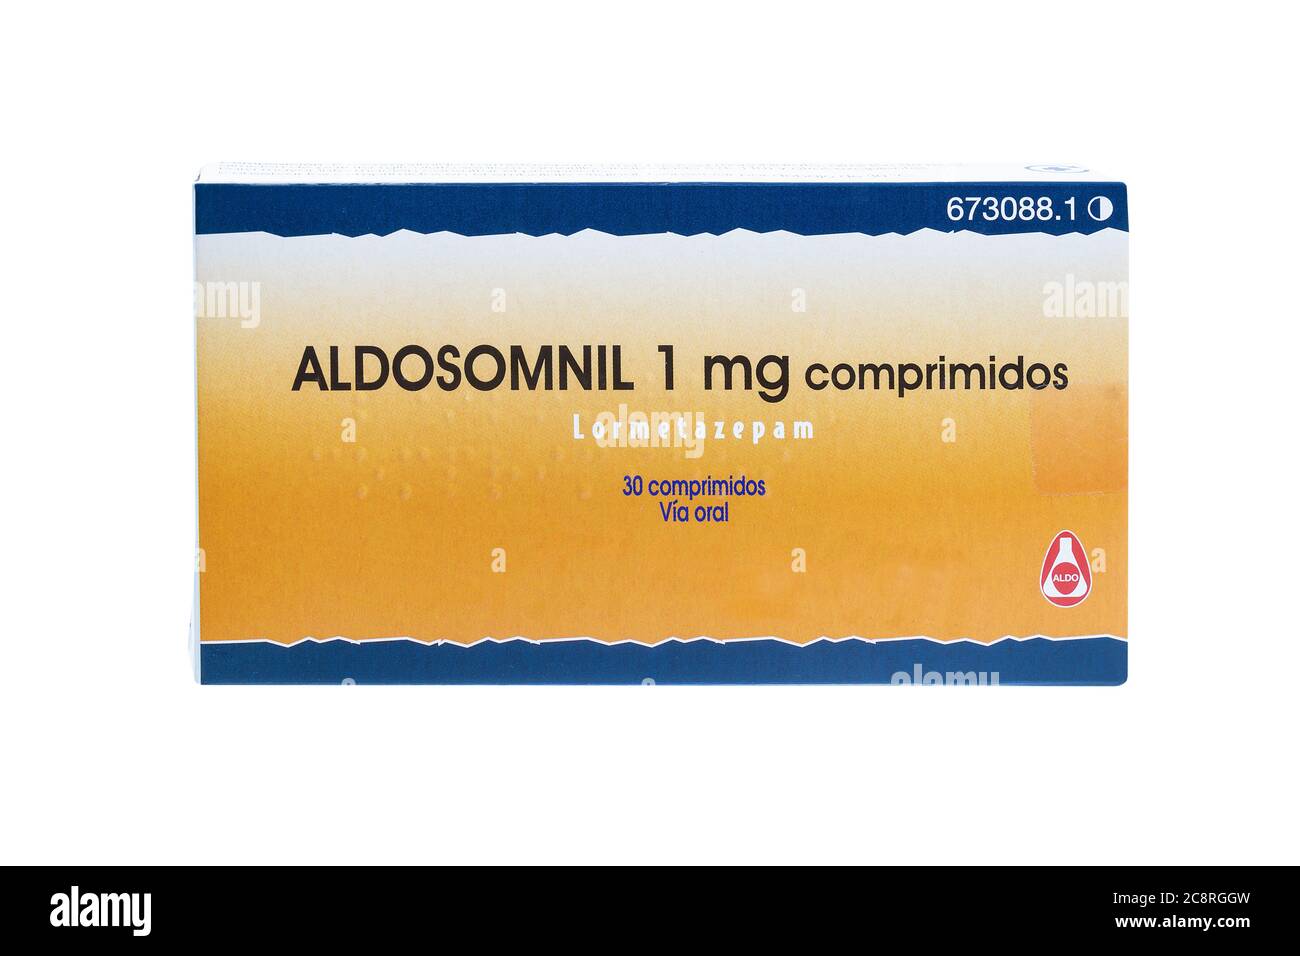 Huelva, Espagne - 23 juillet 2020: Lormetazepam marque Aldosomnil du laboratoire Aldo. Lormetazepam est considéré comme une benzodiazépine hypnotique et est officia Banque D'Images